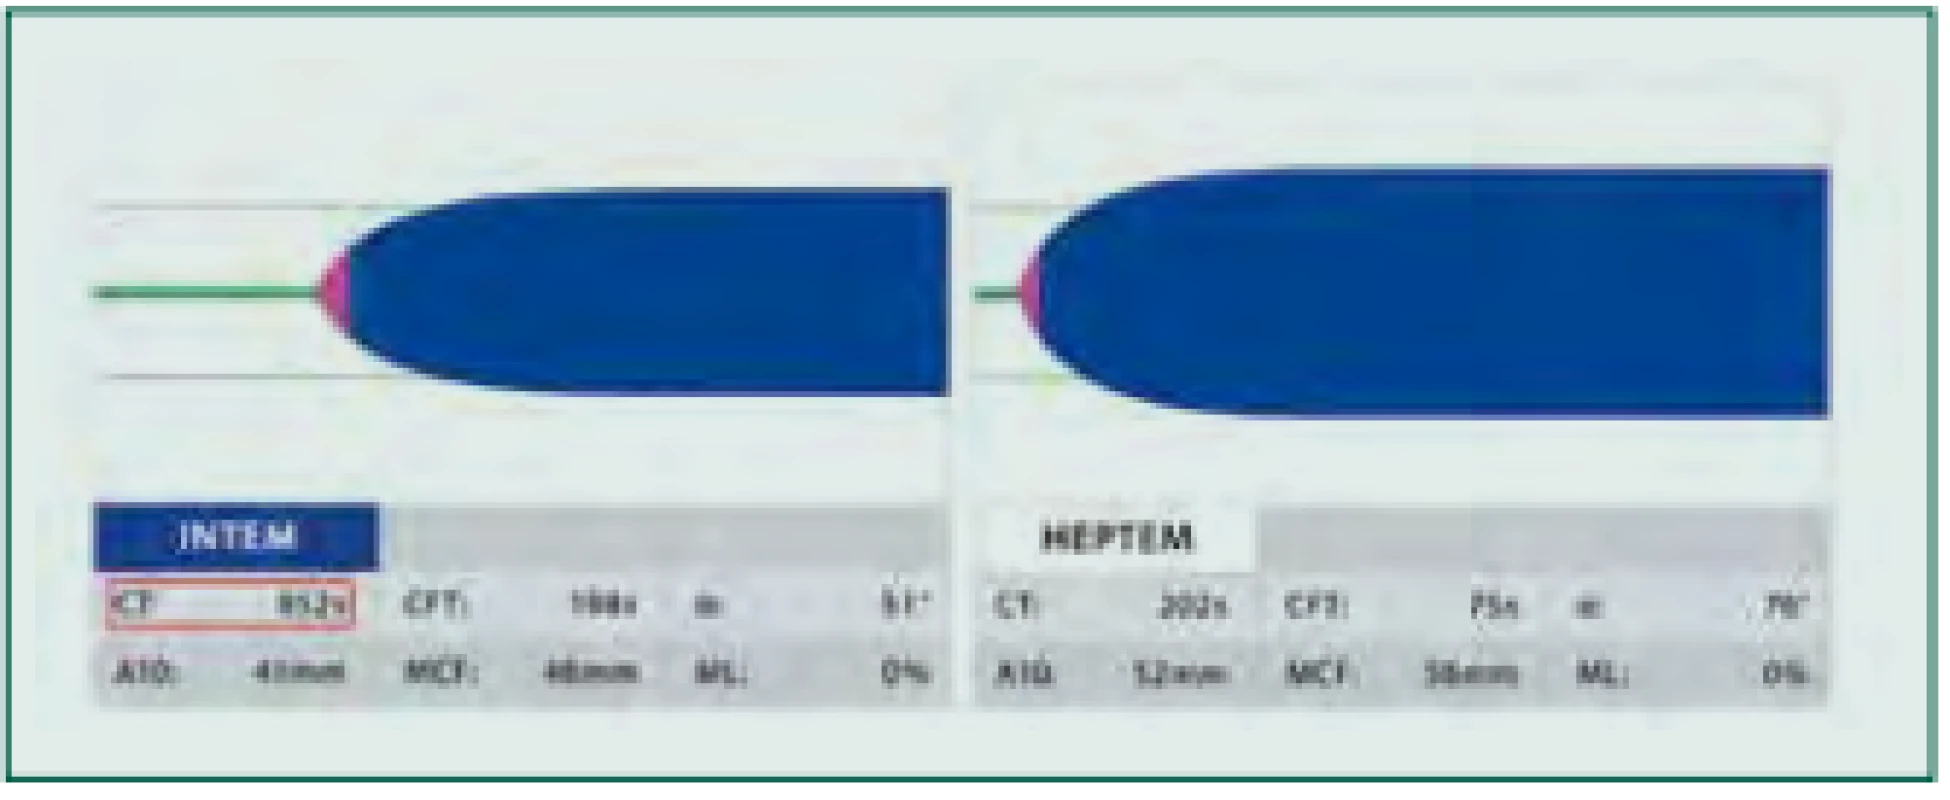 Vliv heparinu: Provedený test INTEM s patologicky prodlouženým
parametrem CT (červený rámeček, normální hodnoty 100–240 s) značí jednak
deficit koagulačních faktorů, ale může znamenat též vliv heparinu. K odlišení
je proveden test HEPTEM s heparinázou. Normalizace parametru CTHEPTEM
potvrzuje vliv heparinu a v terapii tak přichází v úvahu protamin. Pokud je
tento parametr patologický, je nutné substituovat koagulační faktory